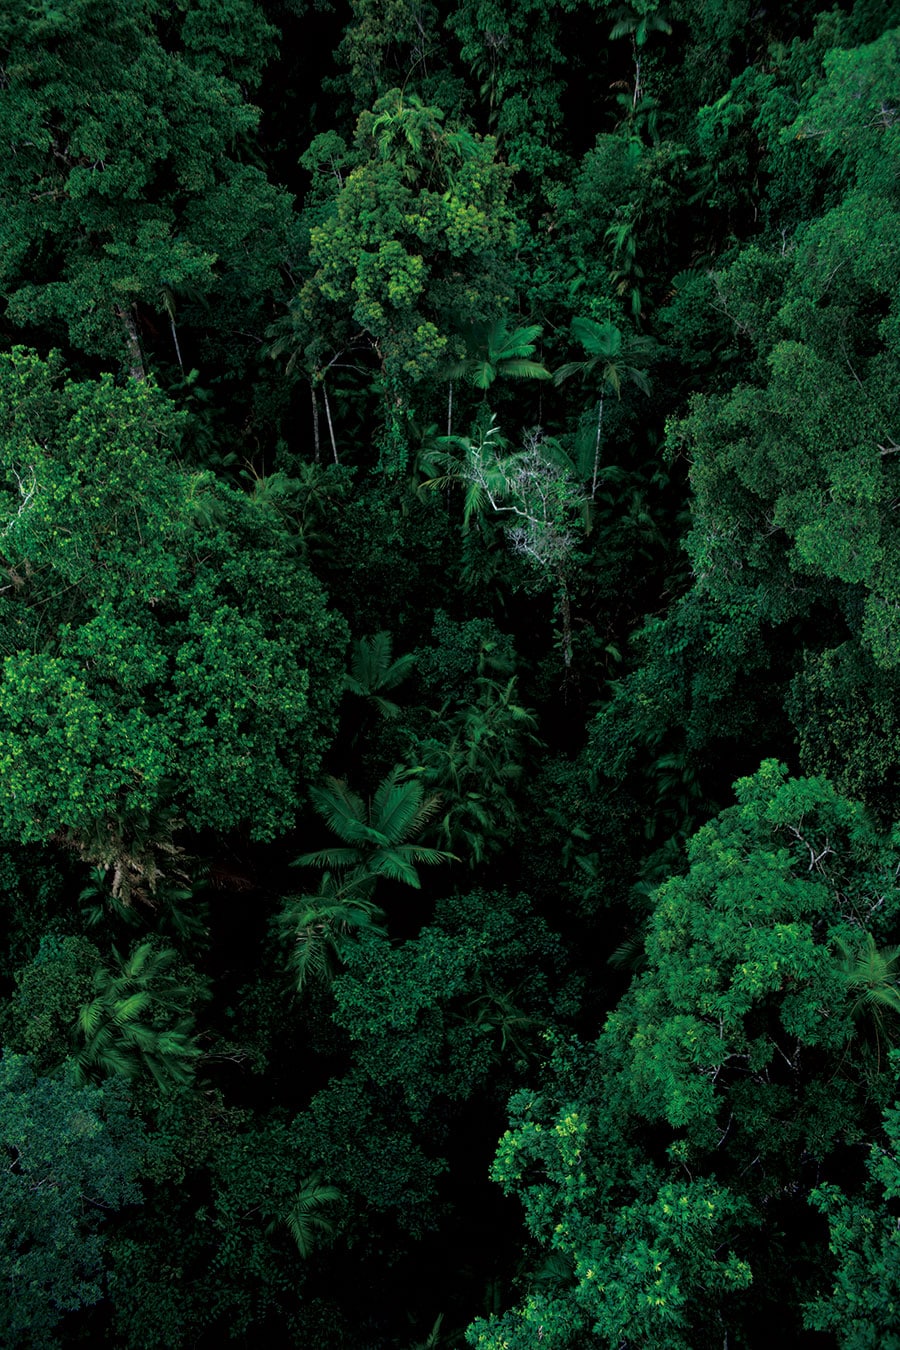 ロープウェイ「スカイレール」から見下ろした熱帯雨林の森。この濃厚な緑が放つ生命力は計り知れない。